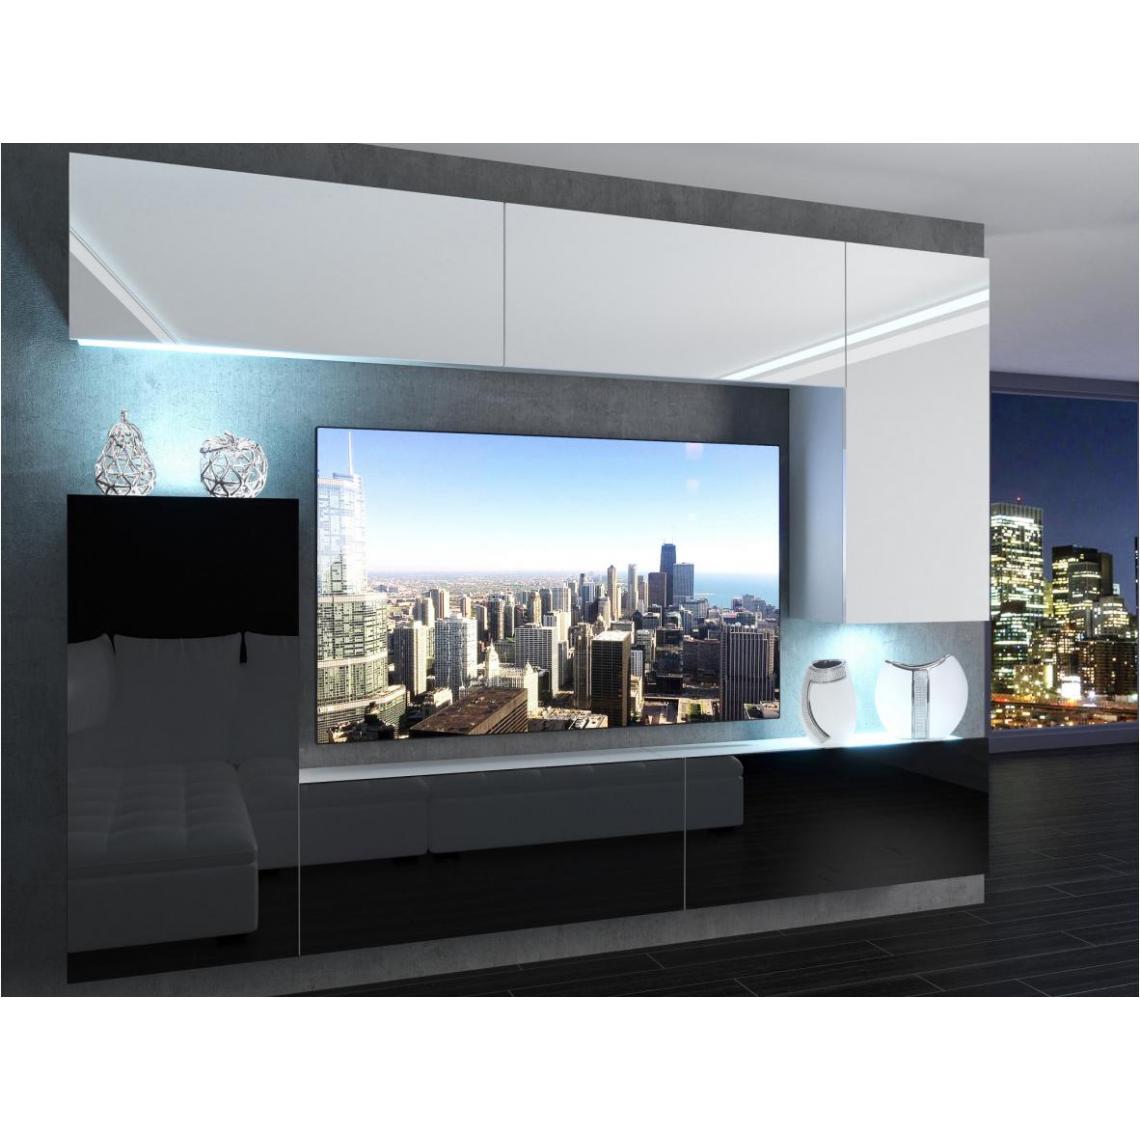 Hucoco - SLIDE - Ensemble meubles TV - Unité murale largeur 250 cm - Mur TV à suspendre - Finition gloss - Sans LED - Blanc/Noir - Meubles TV, Hi-Fi